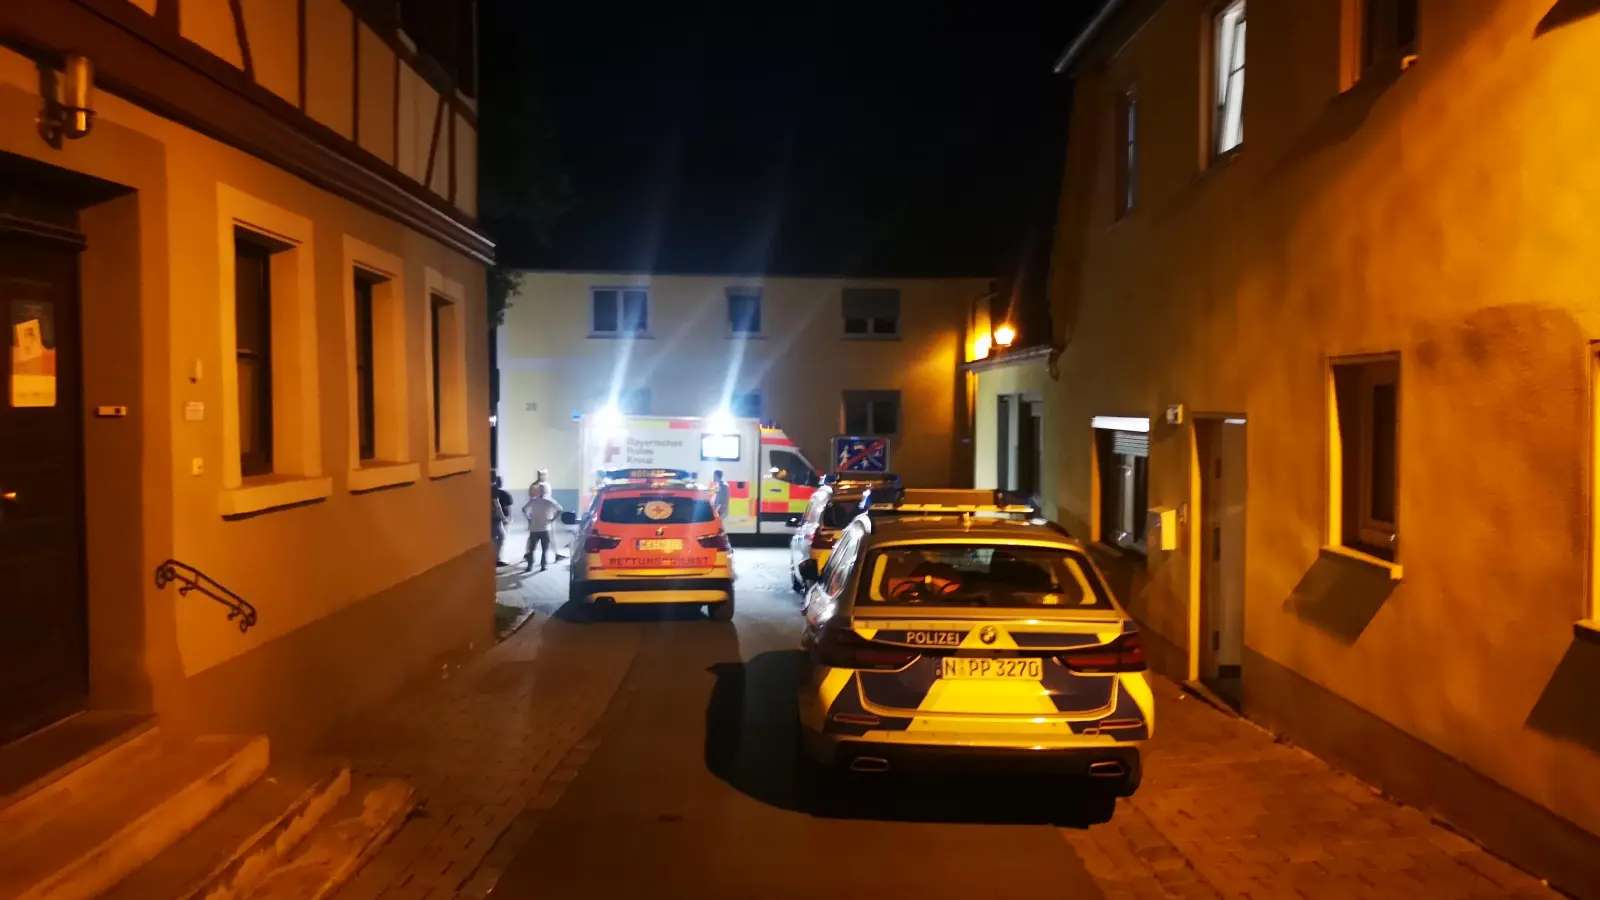 Am späten Samstagabend kam es in Bad Windsheim zu einer Messerstecherei. Eine Person wurde dabei verletzt, die Polizei nahm einen Tatverdächtigen fest. (Foto: NEWS5 / Wohlgemuth)